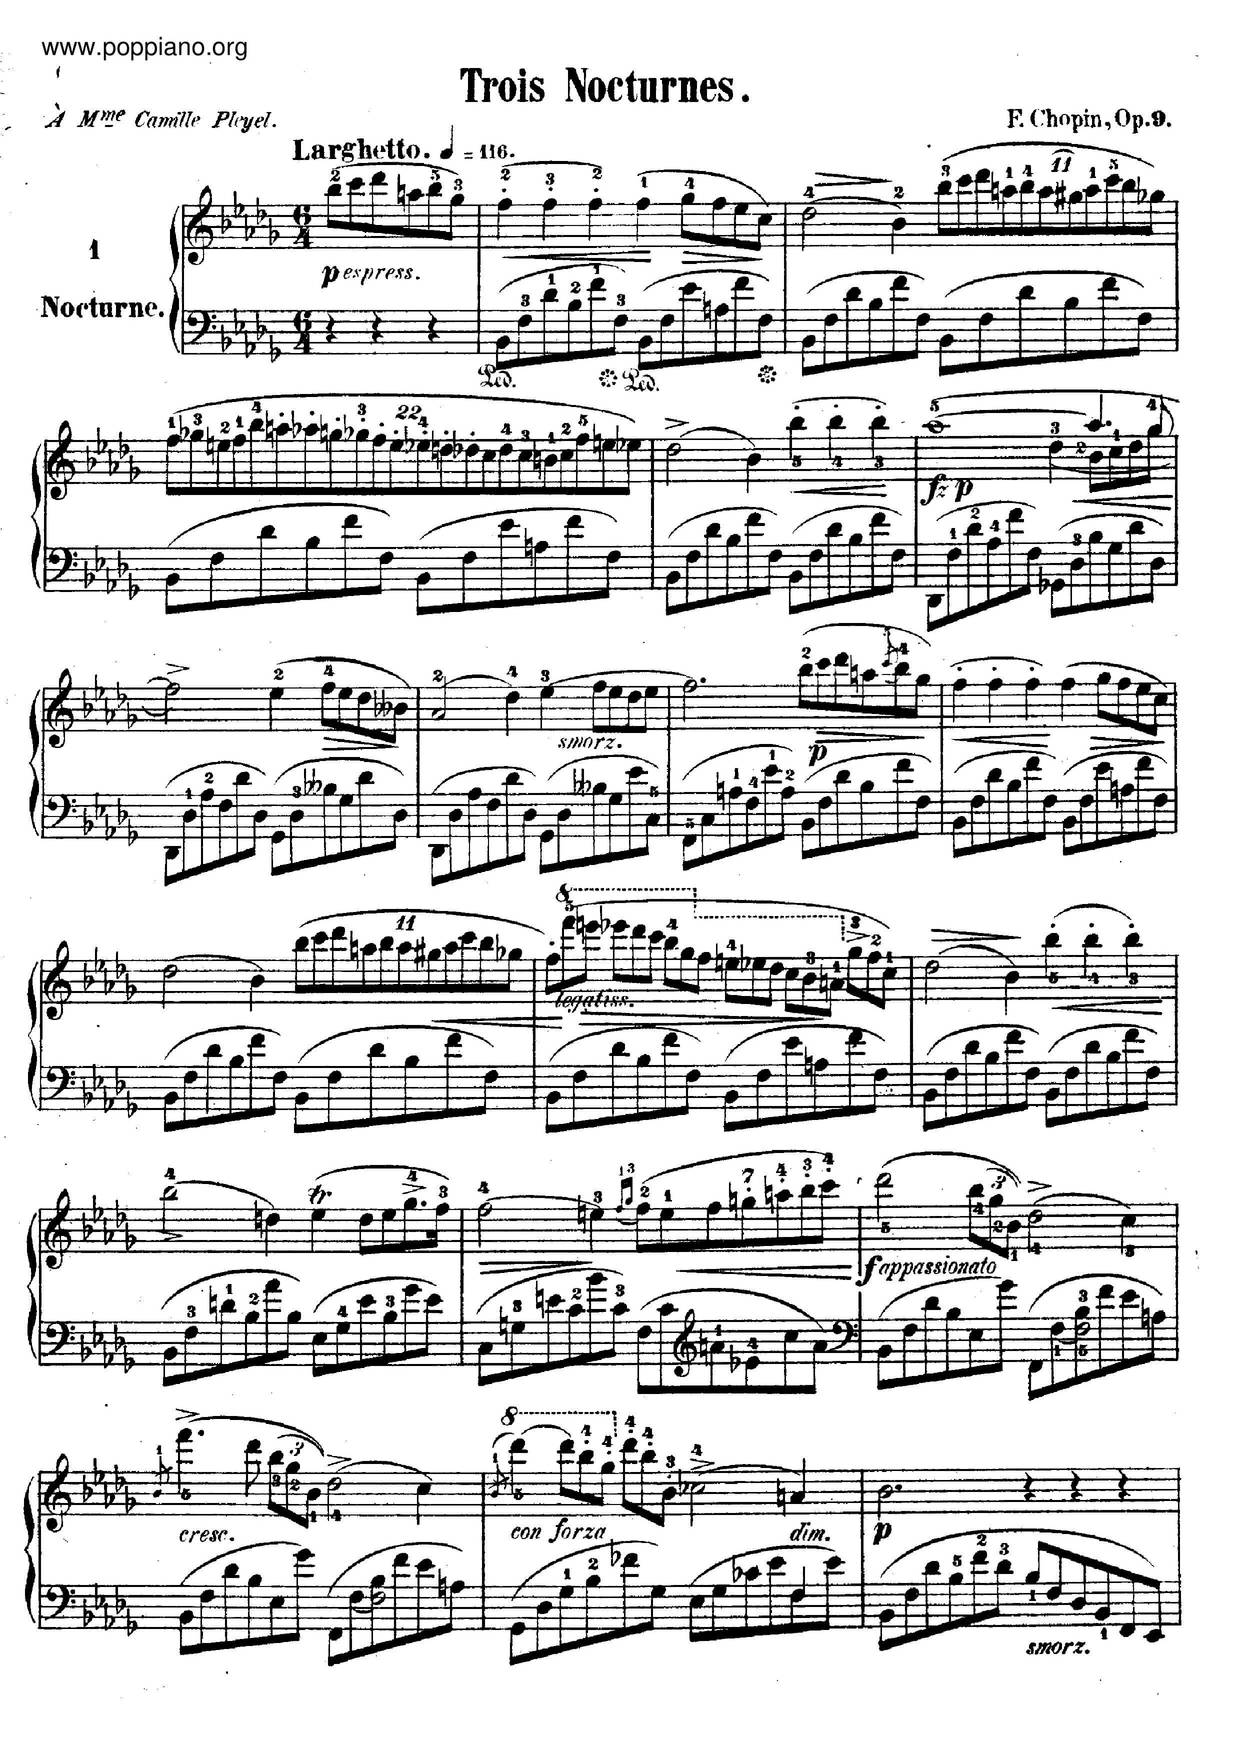 Nocturne Op. 9 No. 1 in B flat minor Score